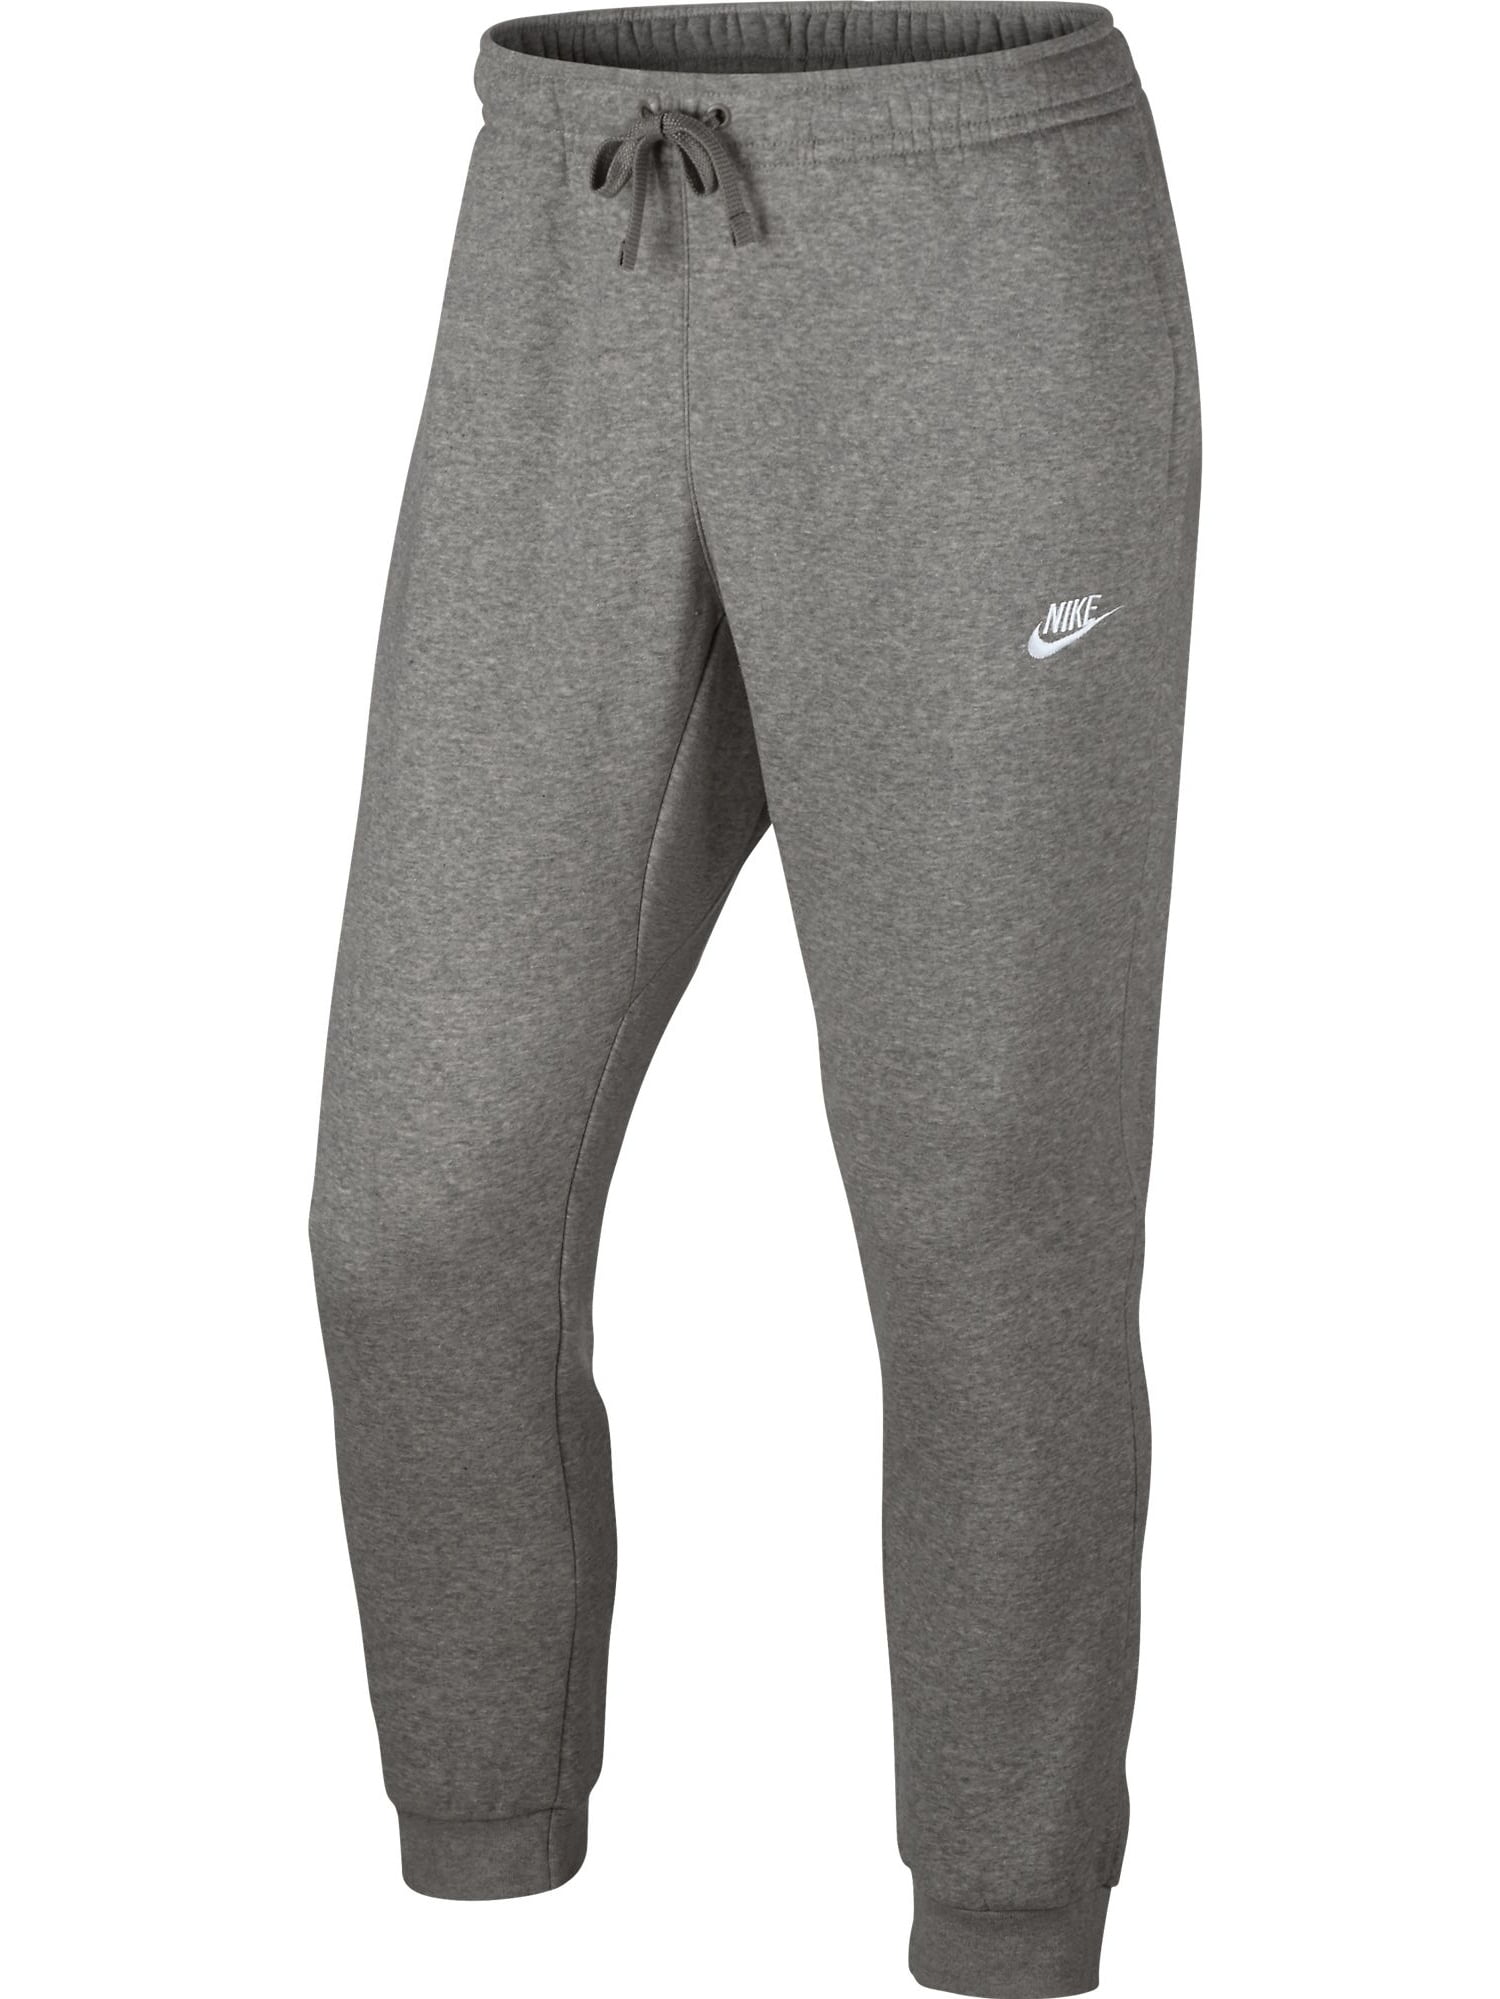 Nike Fleece Jogger Pants 804408-063 - Walmart.com